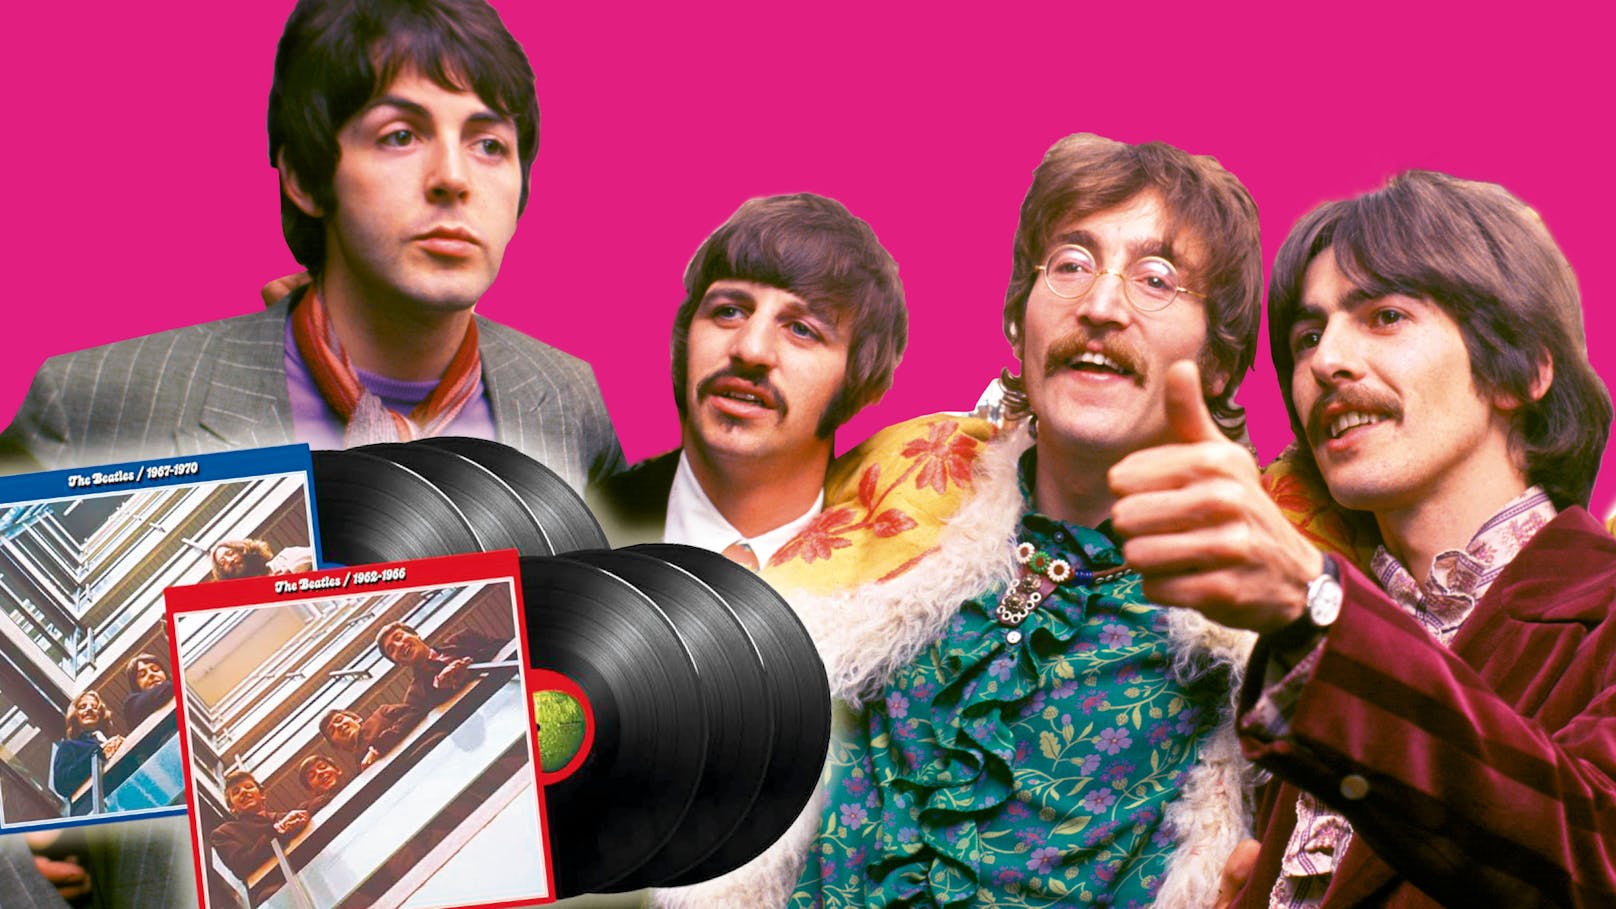 Braucht man die "neuen" Beatles-Alben wirklich?